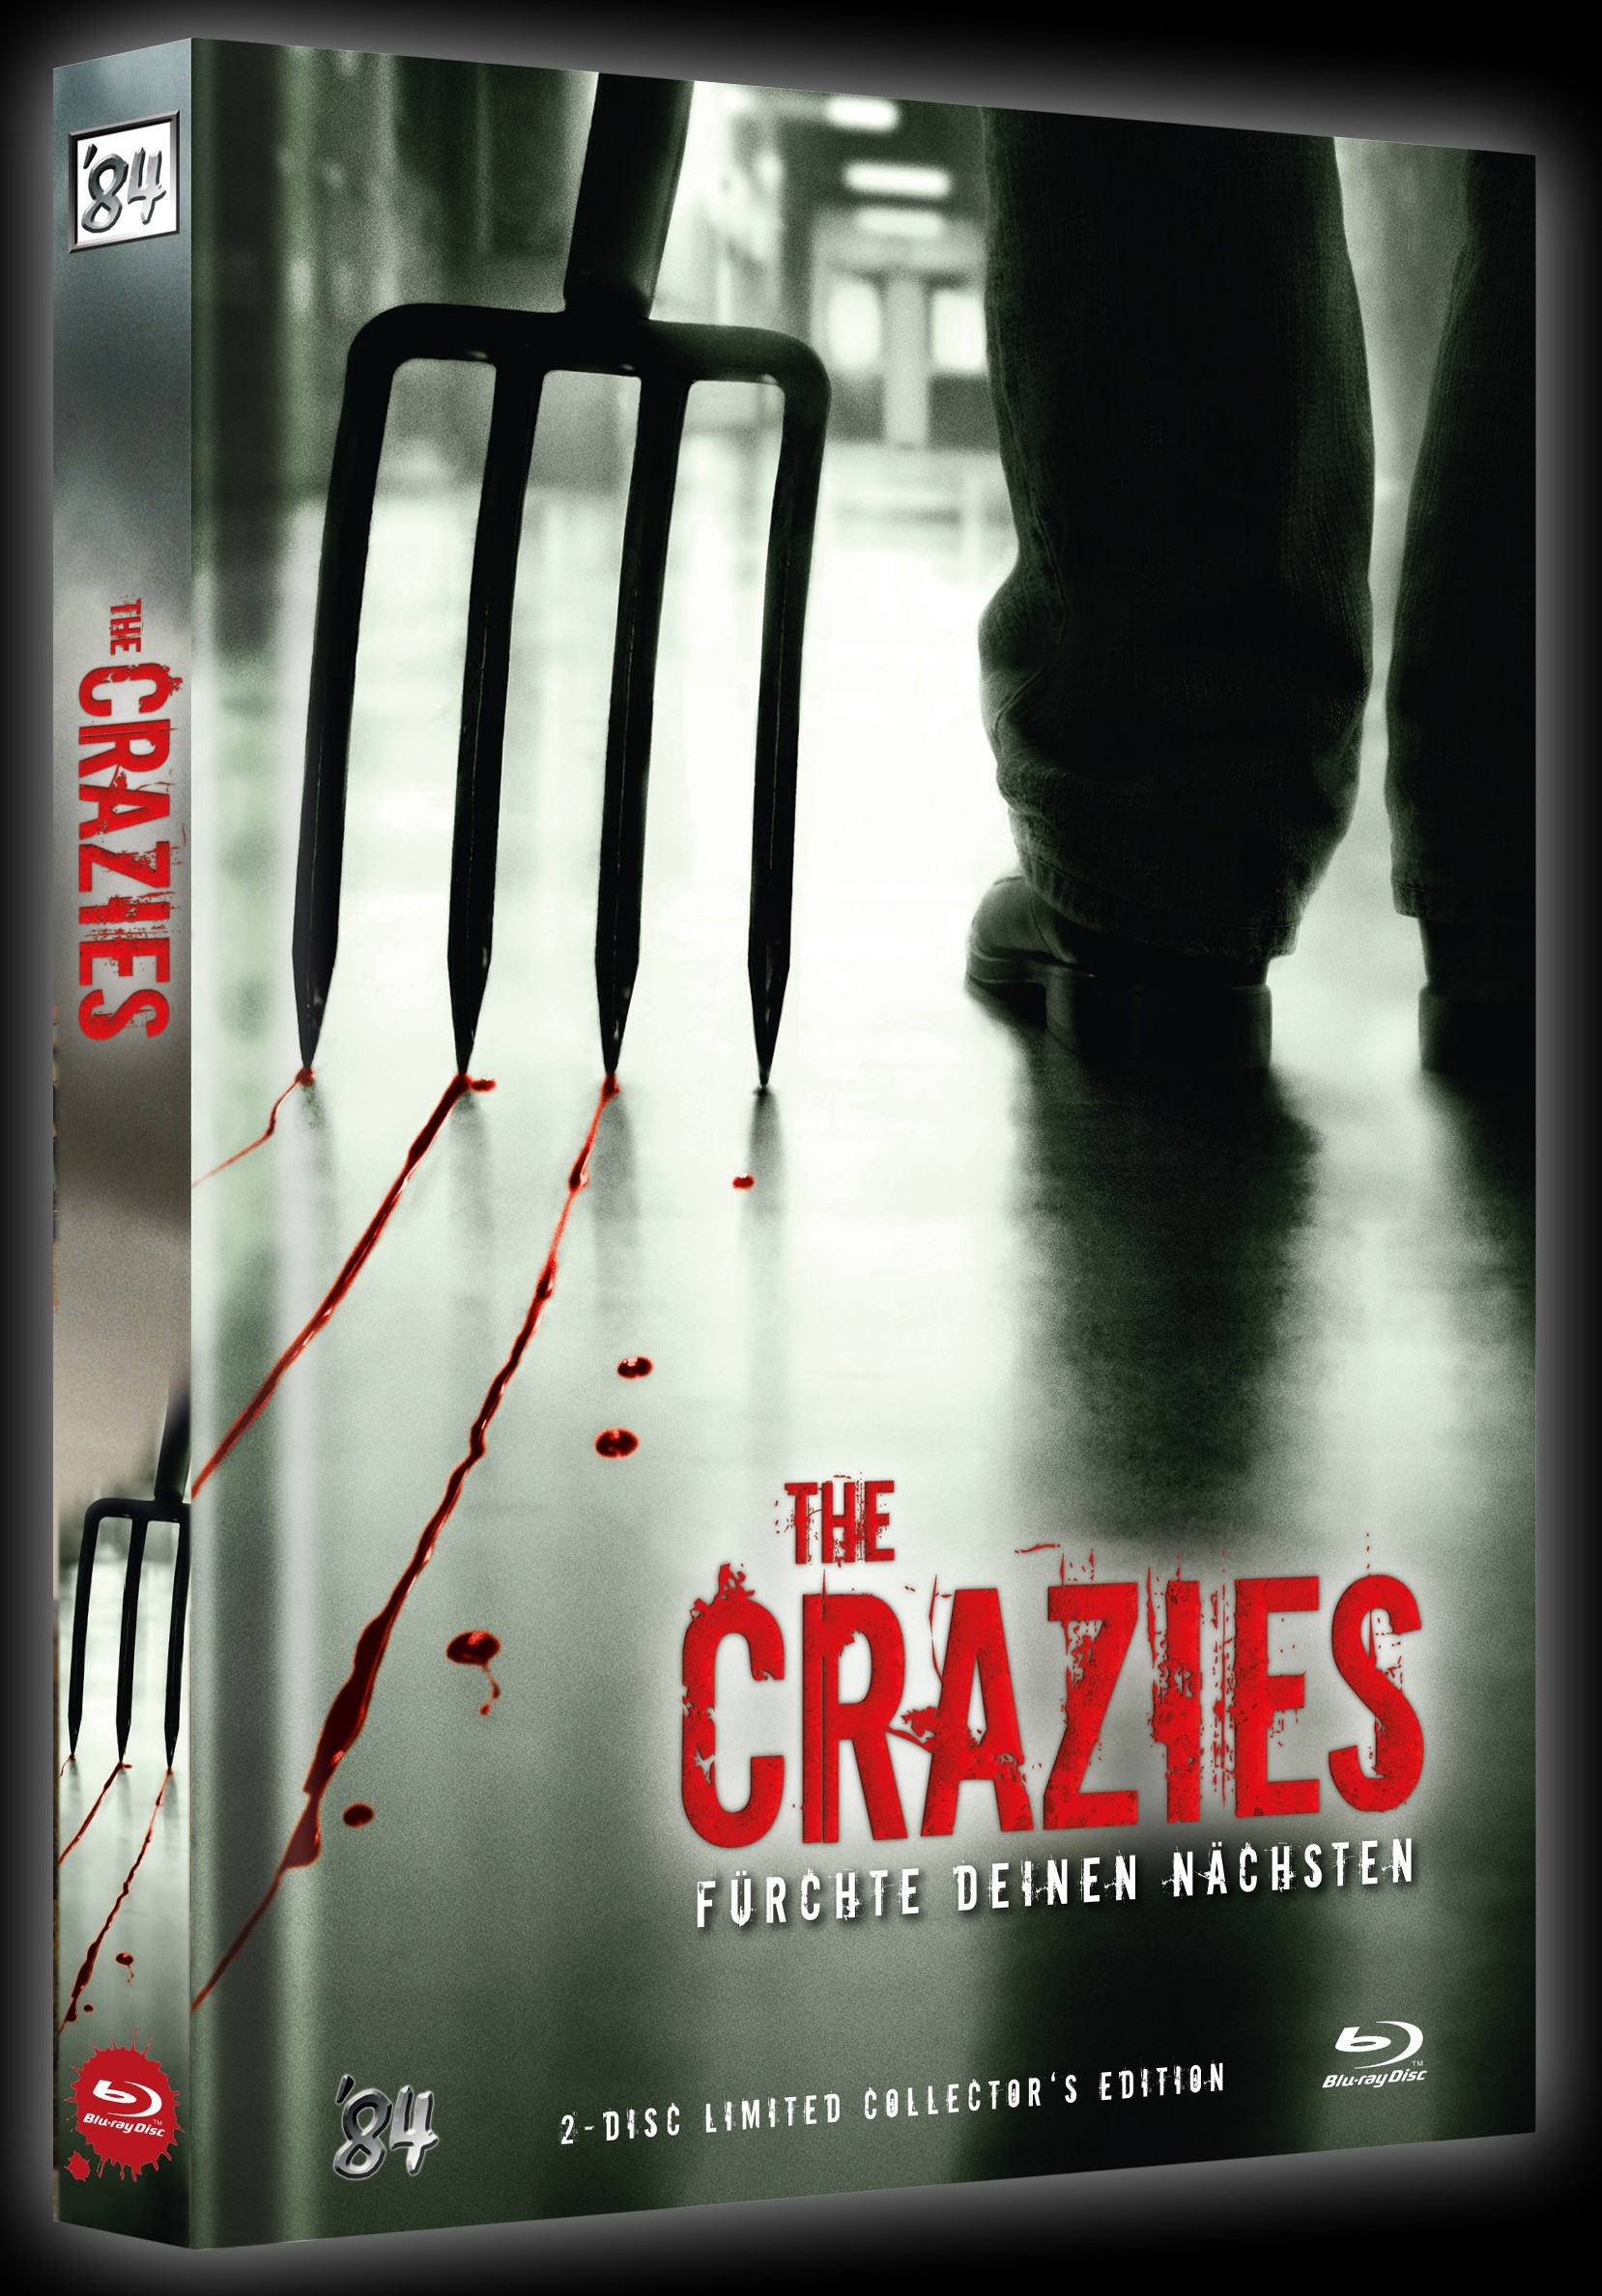 crazies-mediabook-cover-a.jpg